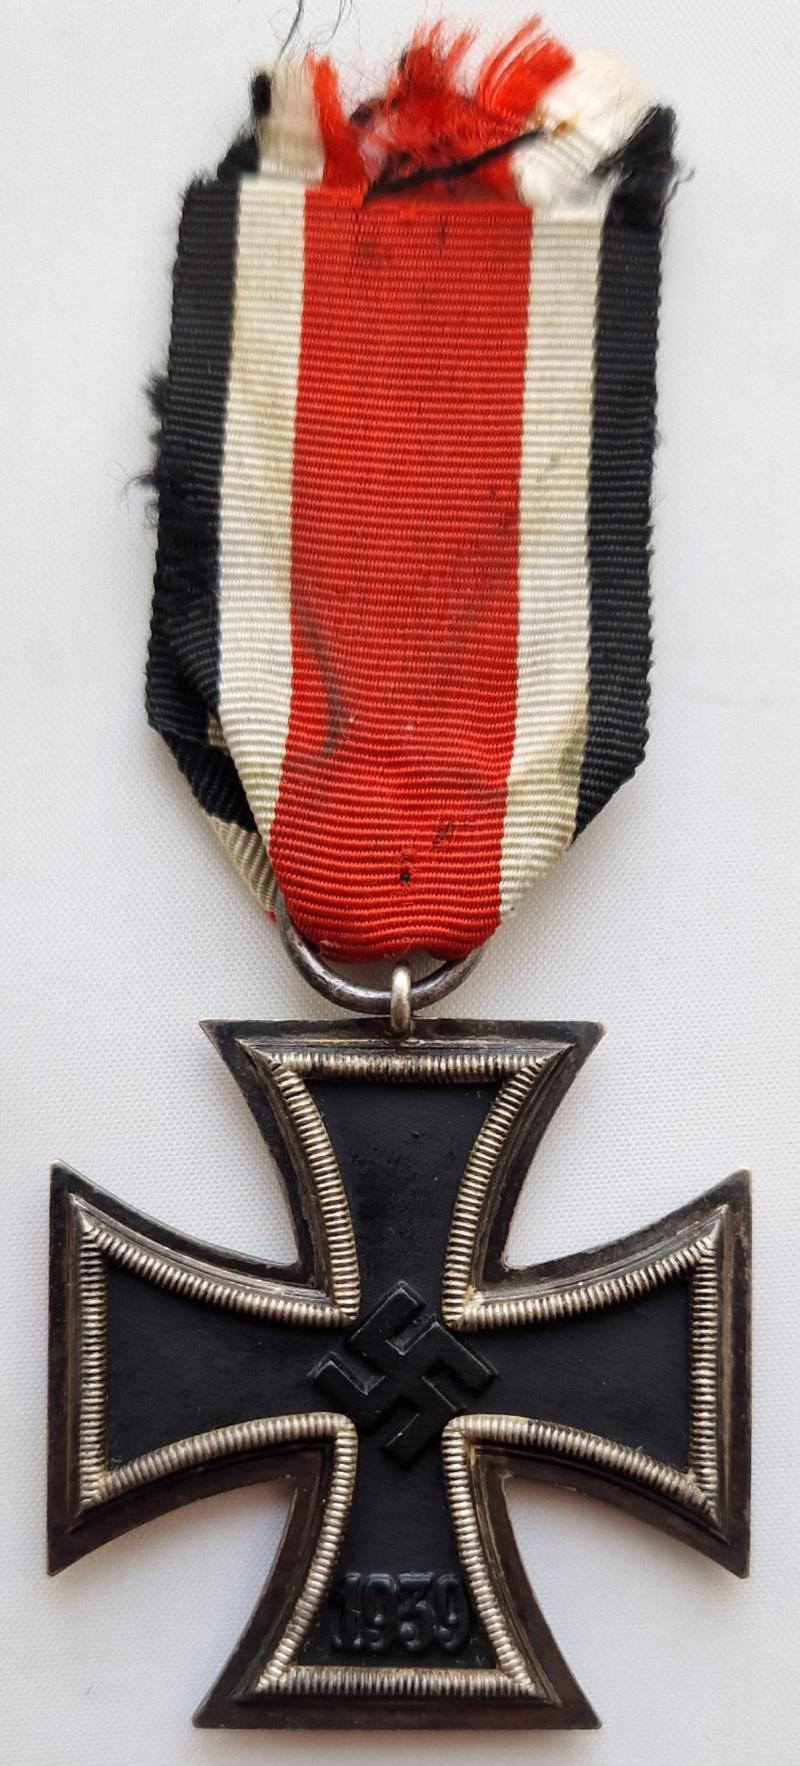 Rare 1939 Iron Cross Second Class by Robert Hauschild mm56